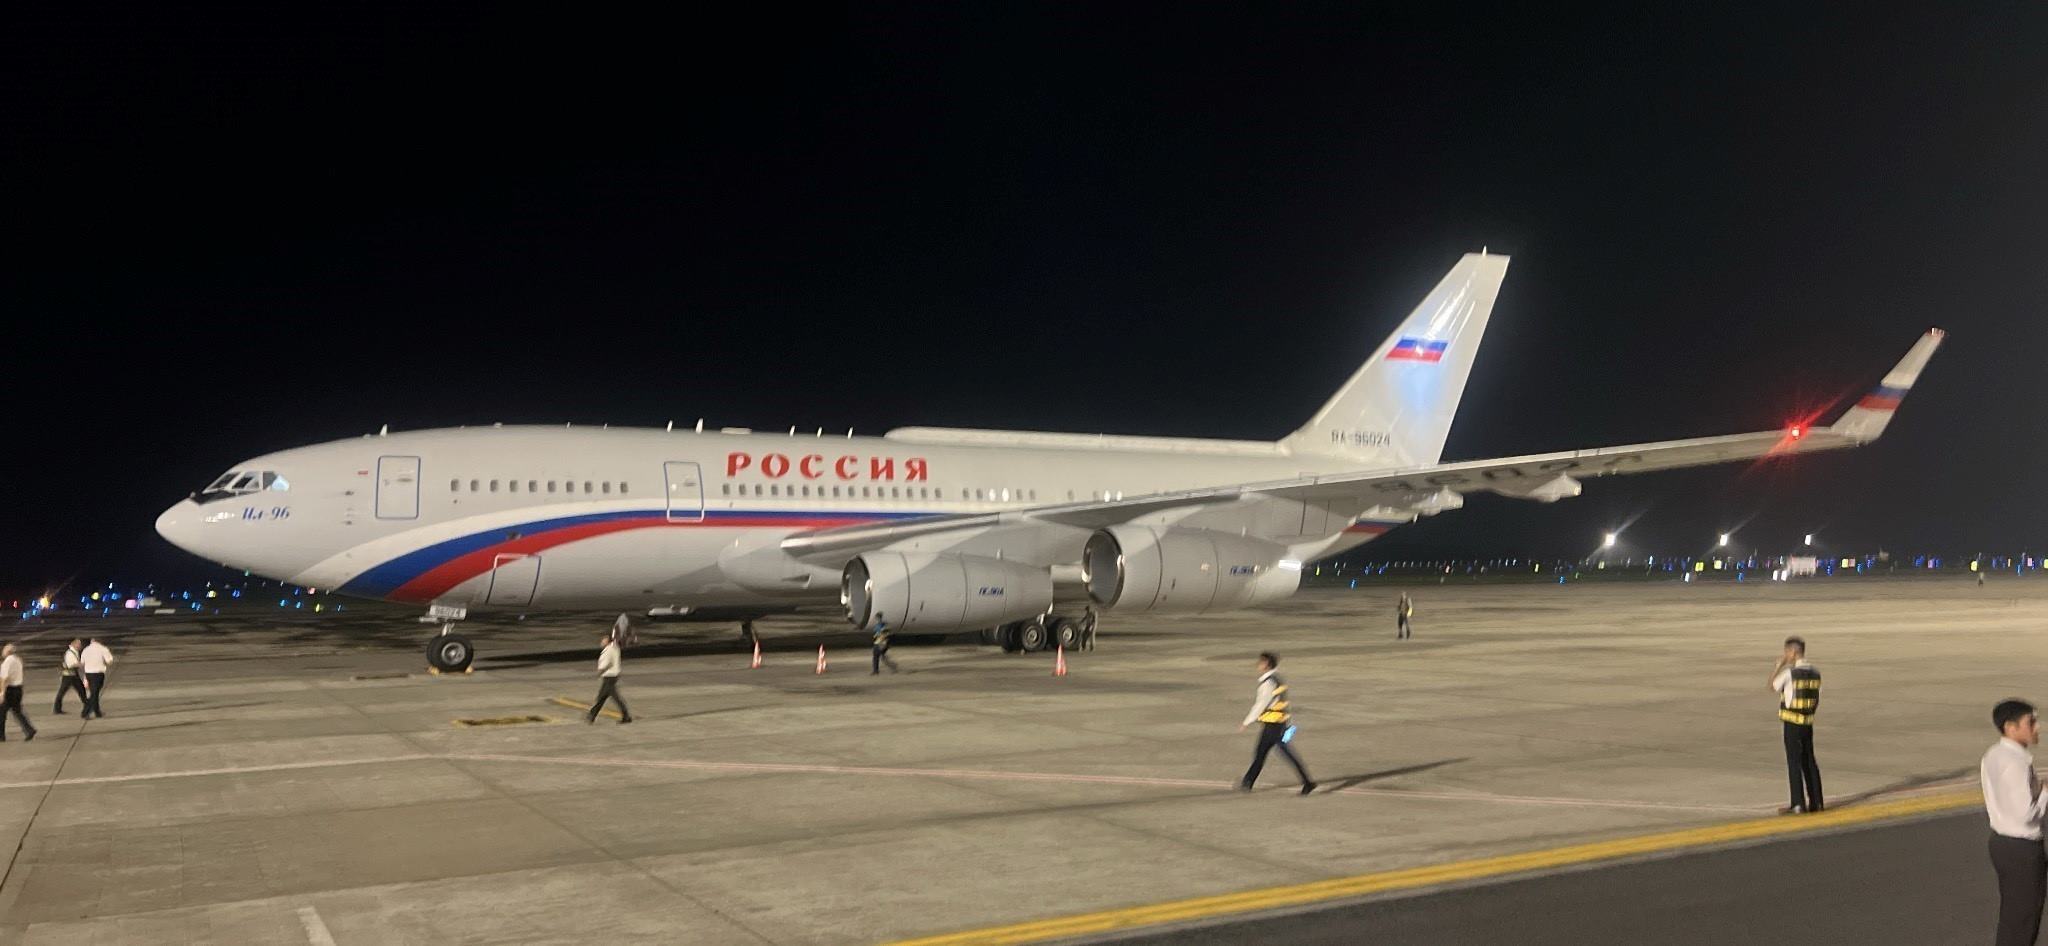 Chuyên cơ chở Tổng thống Nga Vladimir Putin hạ cánh xuống sân bay Nội Bài rạng sáng 20.6. Ảnh: Phạm Kiên/TTXVN